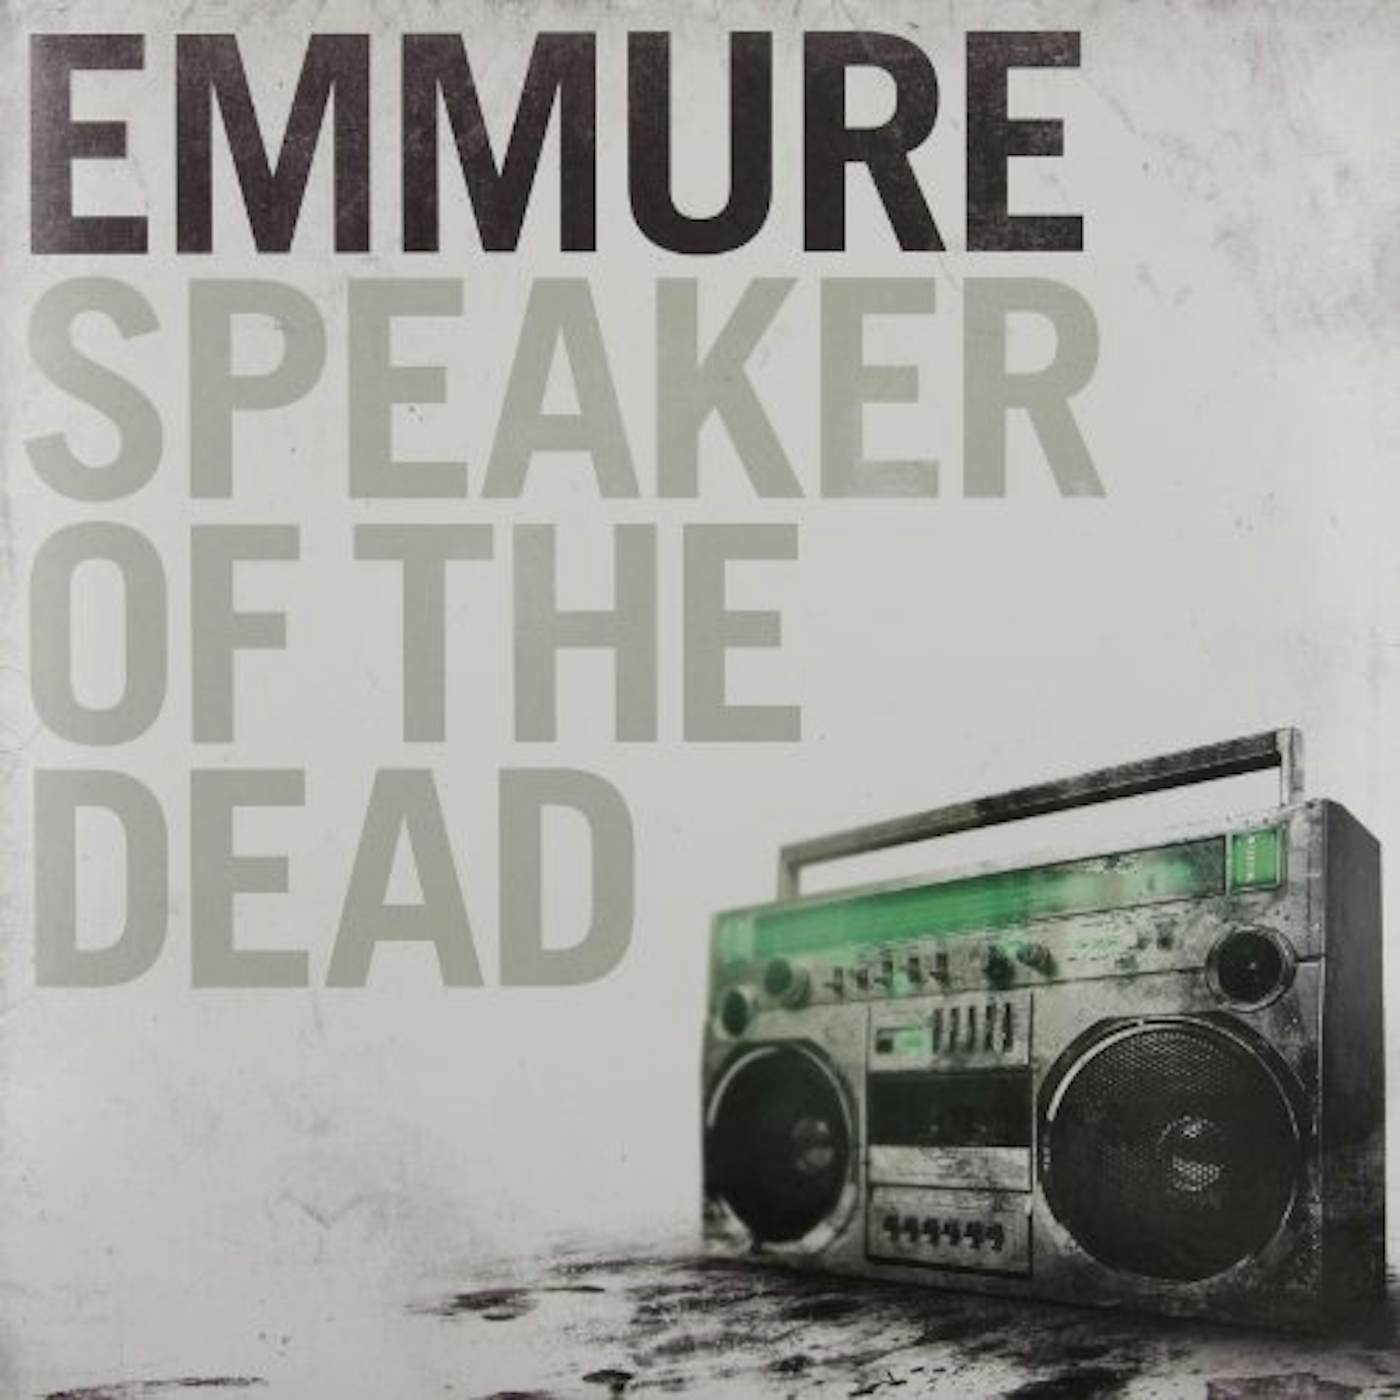 Emmure Speaker Of The Dead Vinyl Record